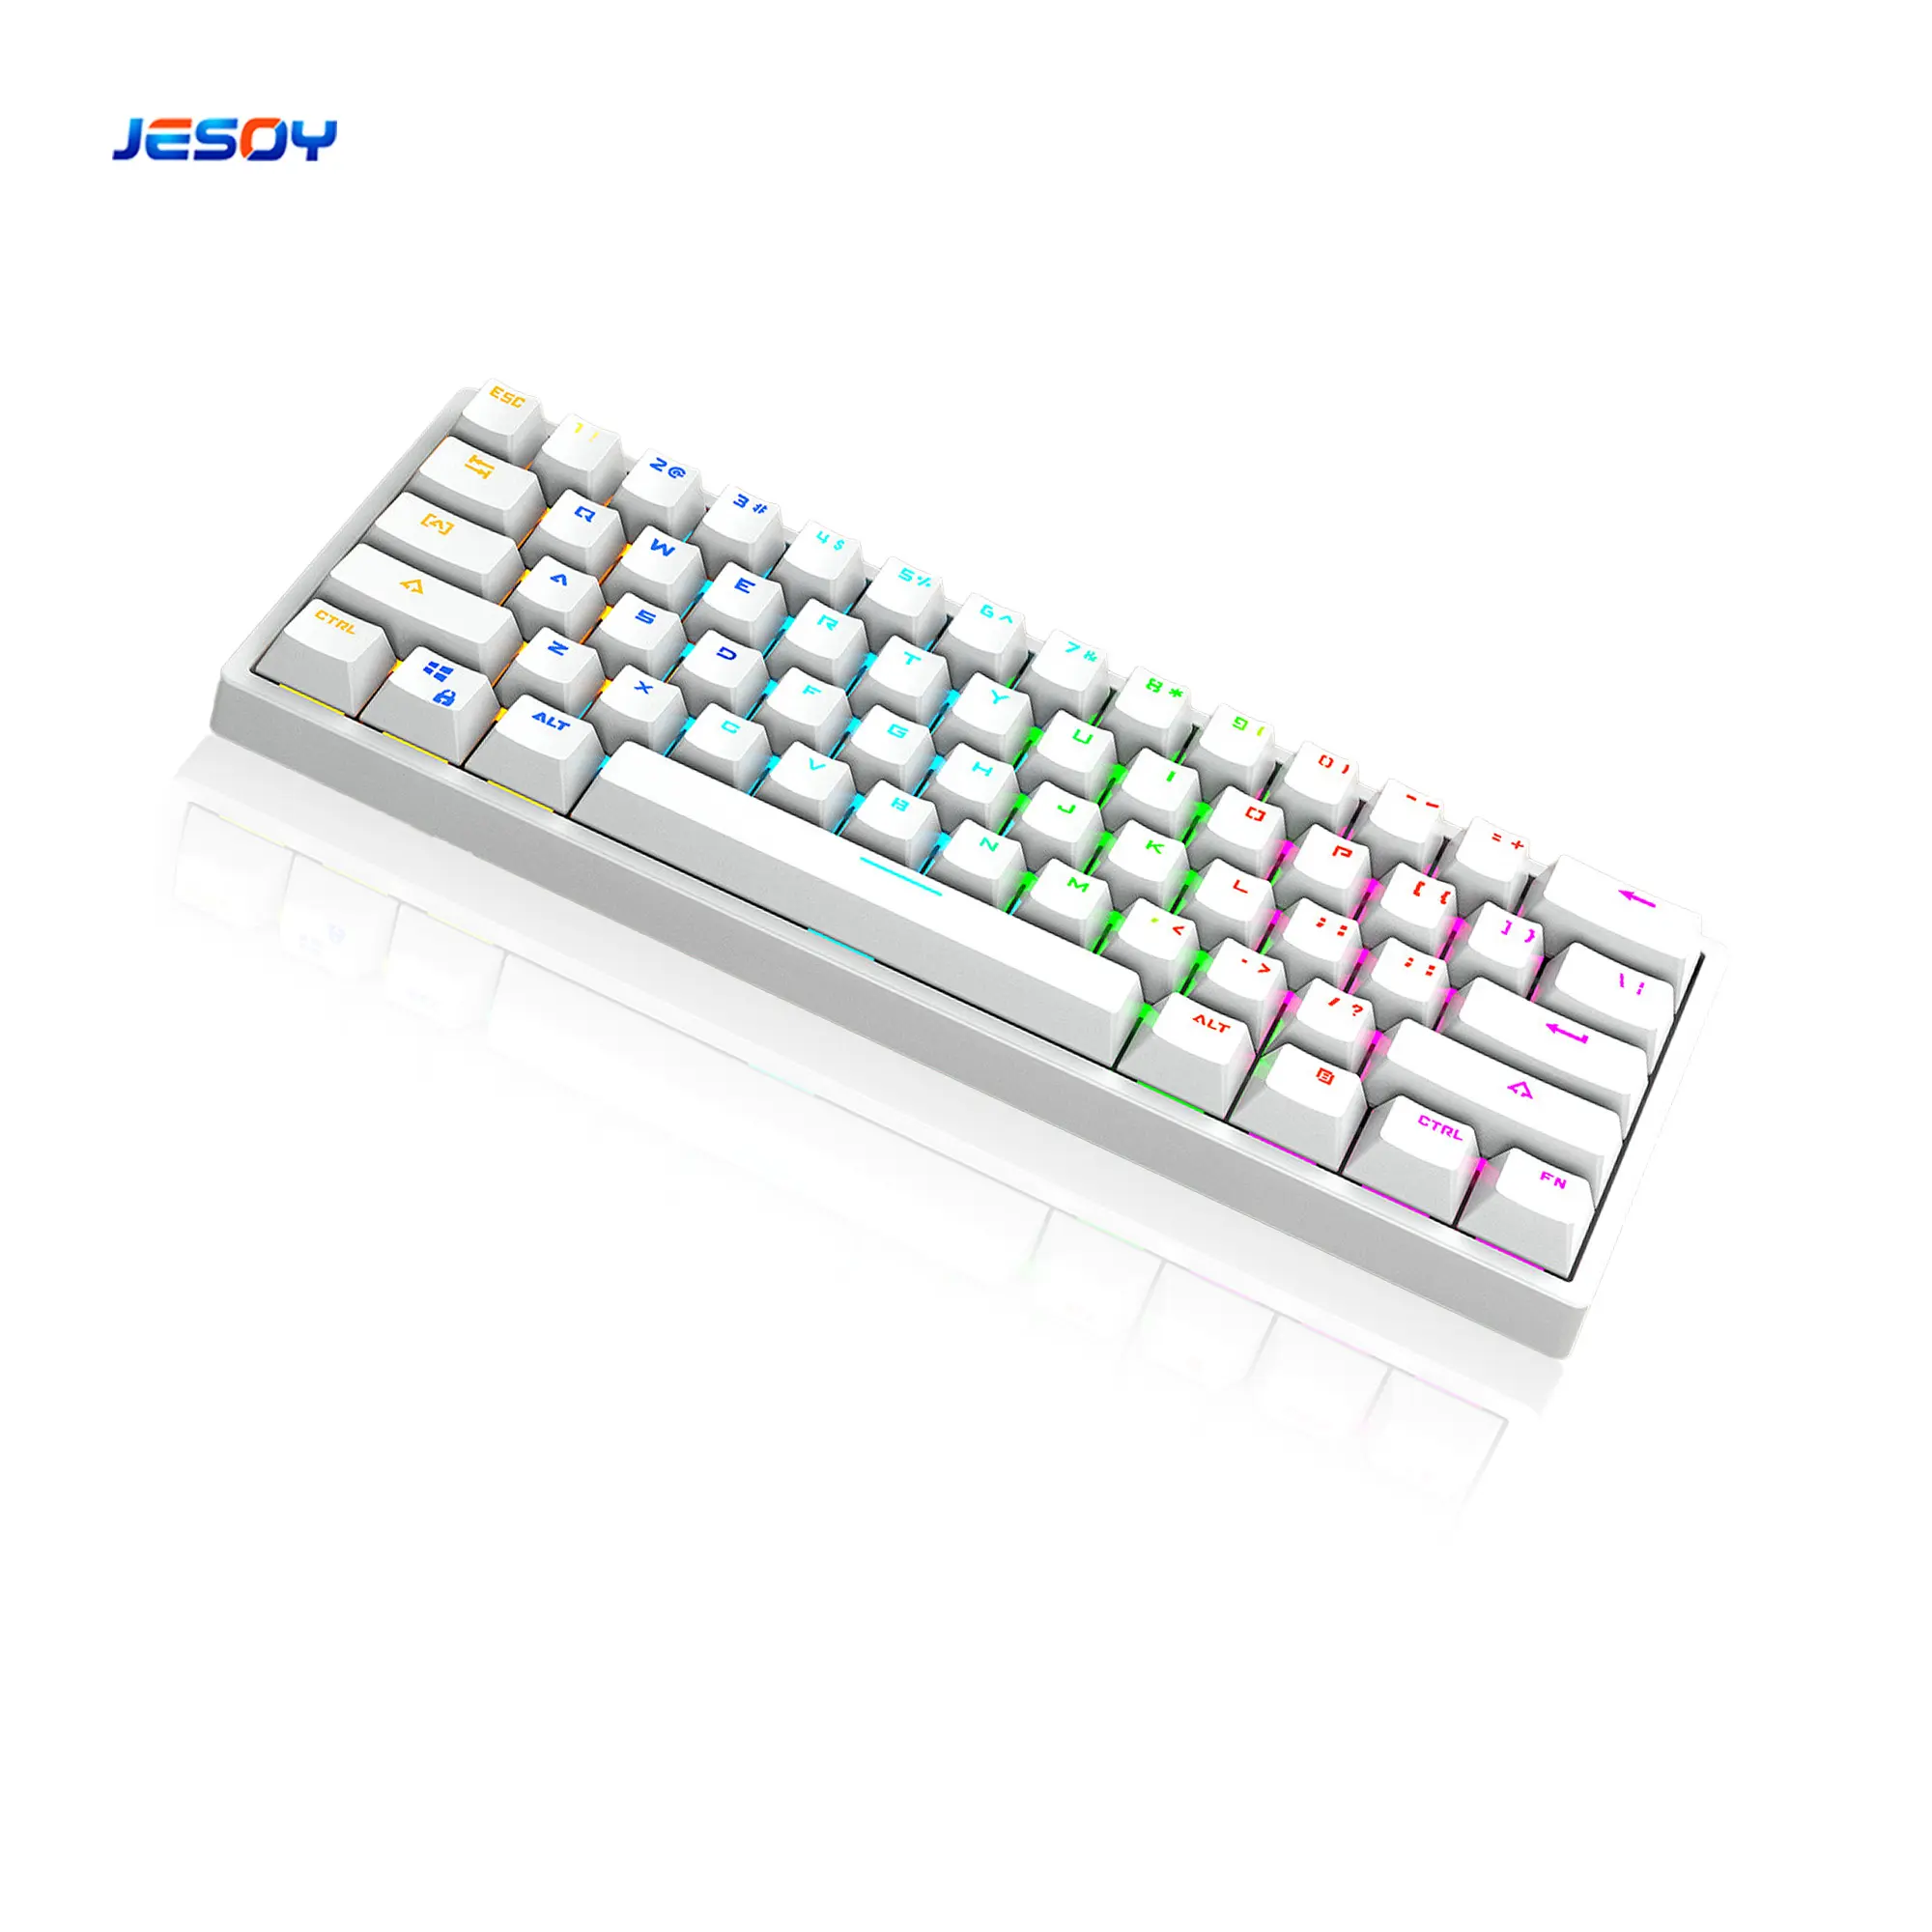 لوحة مفاتيح صغيرة للألعاب 61 مفتاح لوحة مفاتيح ميكانيكية سلكية لاسلكية احترافية بإضاءة خلفية RGB